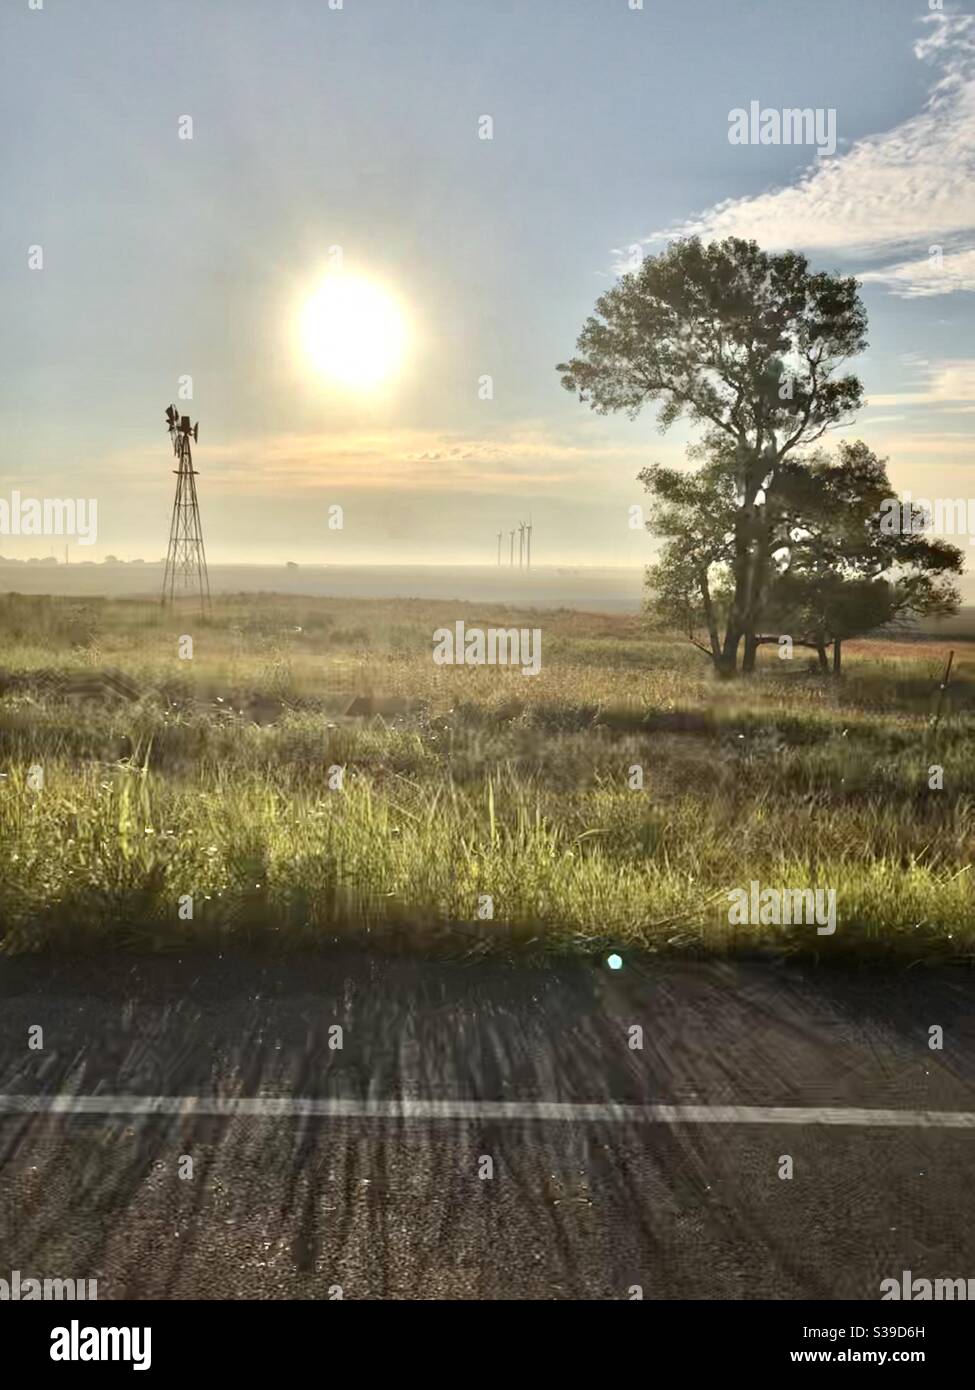 Oklahoma farmland and windmills Stock Photo